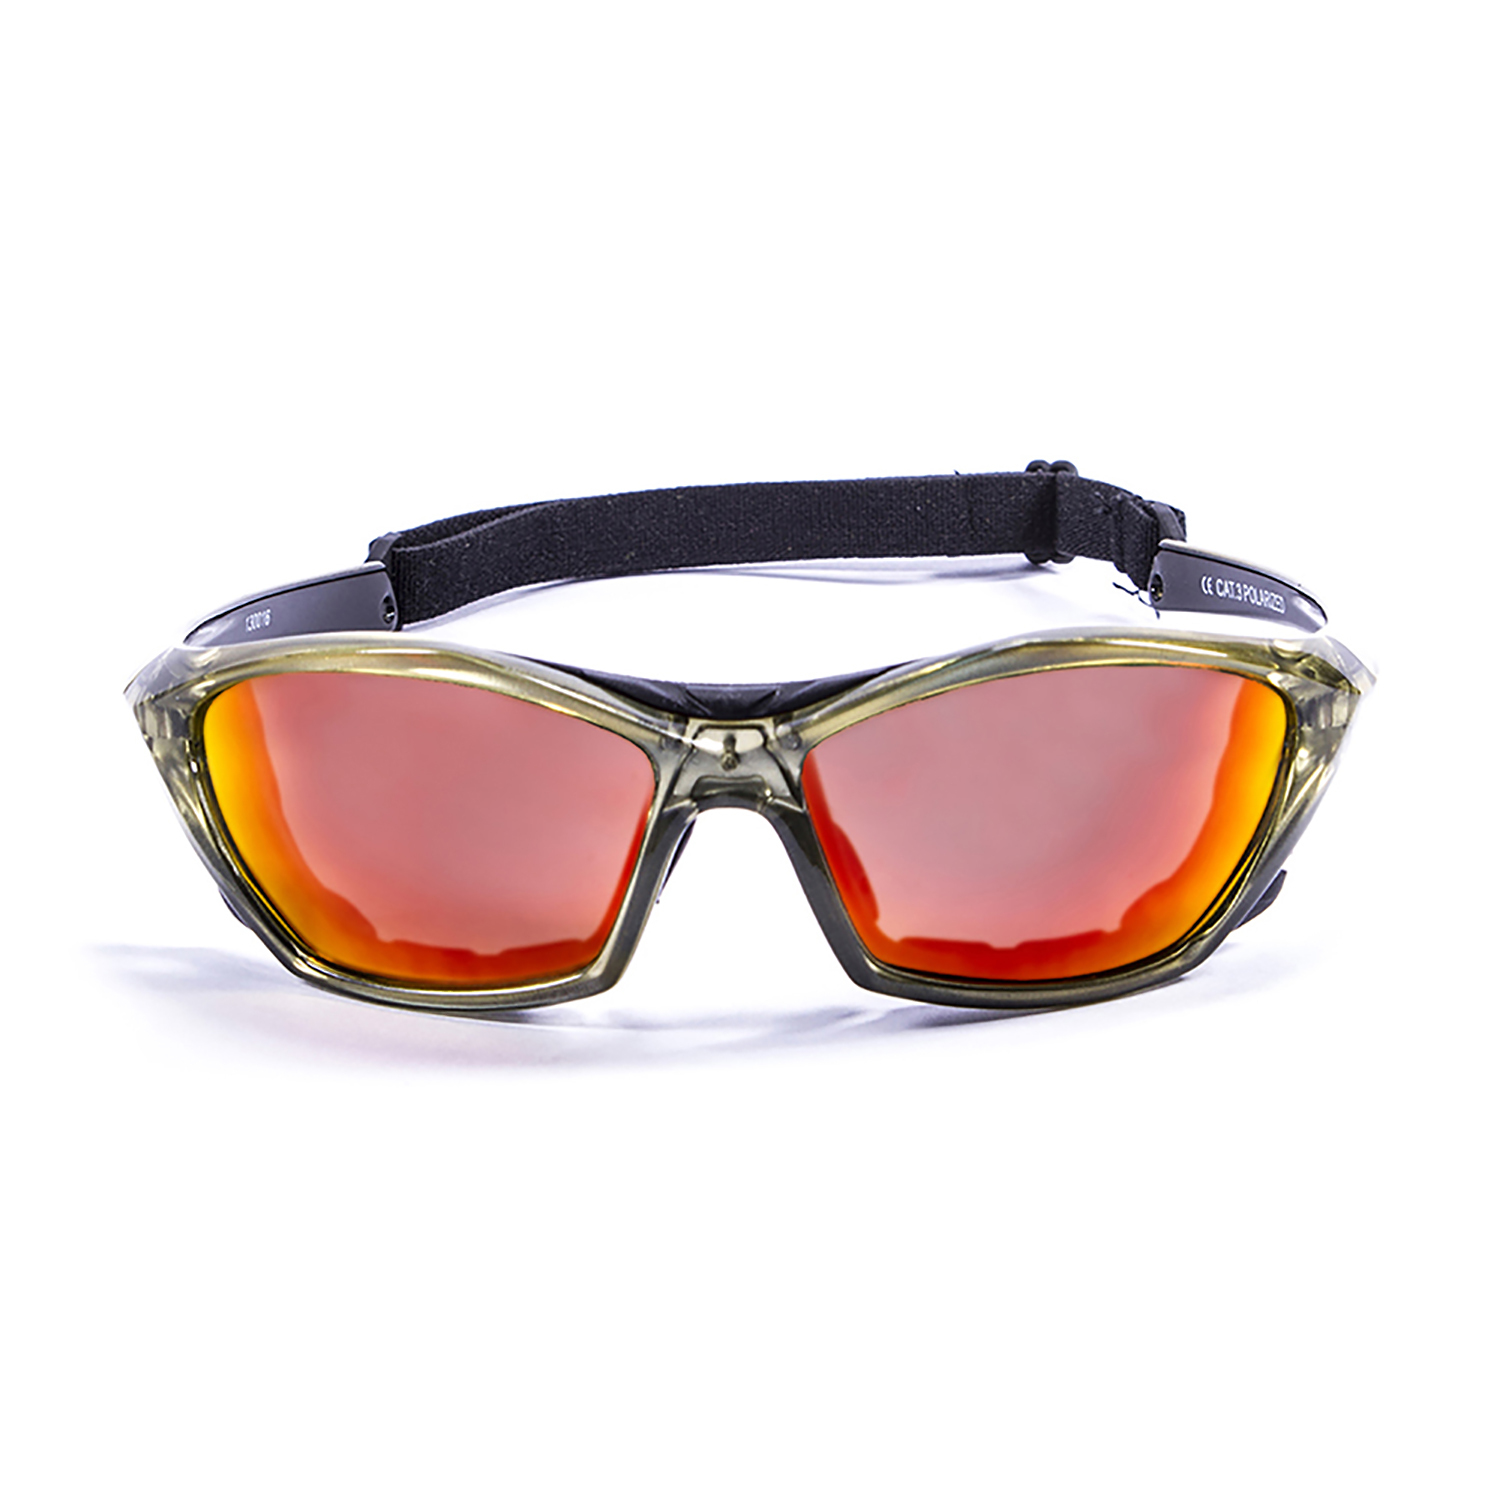 Vehla очки купить. Спортивные солнцезащитные очки. Очки для яхтинга. Очки для кайтсерфинга. Солнцезащитные очки для яхтинга.